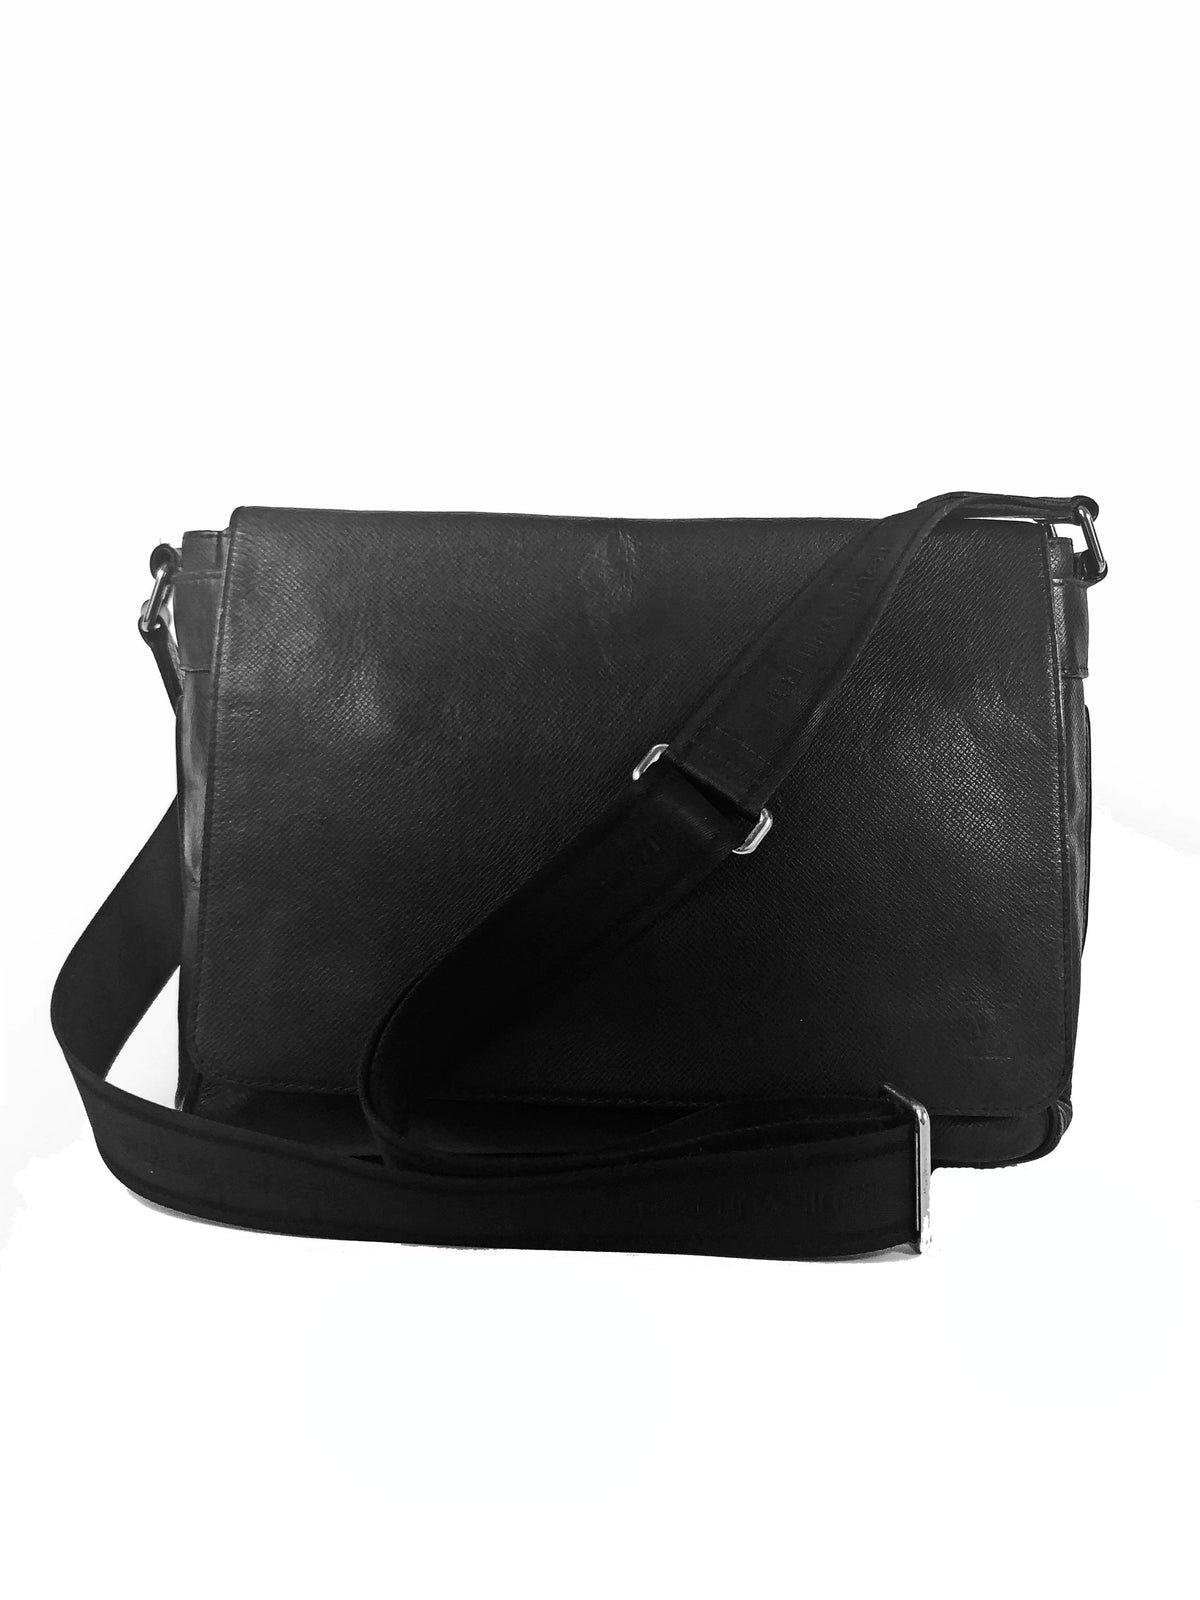 Louis Vuitton, Bags, Authentic Louis Vuitton Roman Pm Messenger Bag